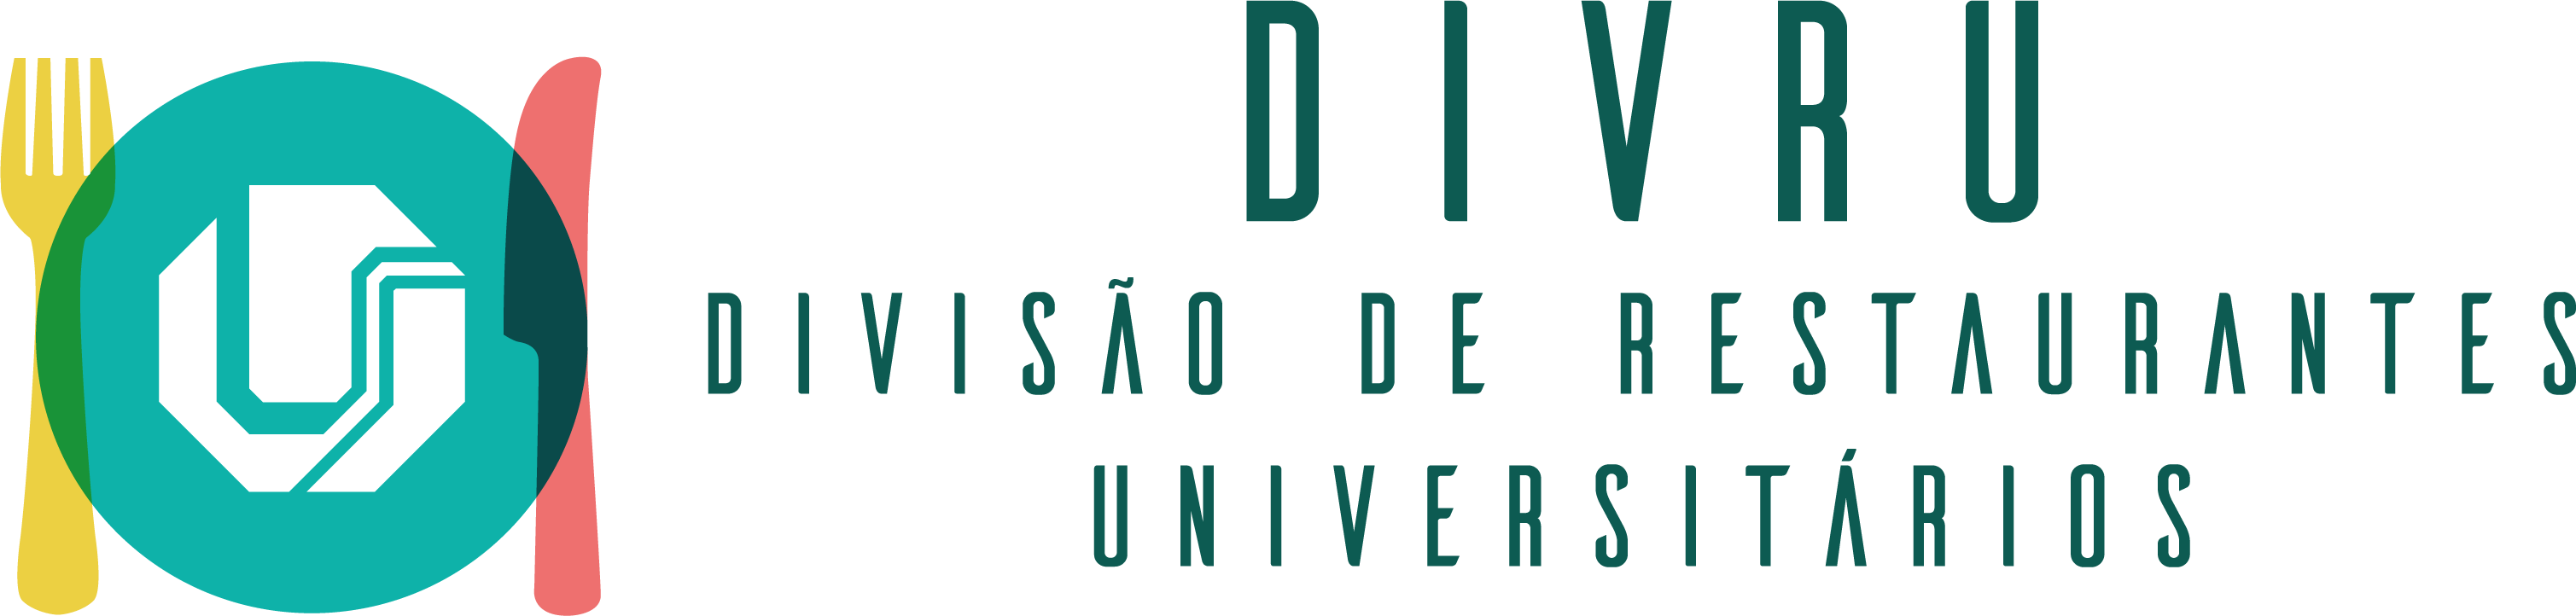 Logotipo da Divisão de Restaurantes Universitários - DIVRU/UFU